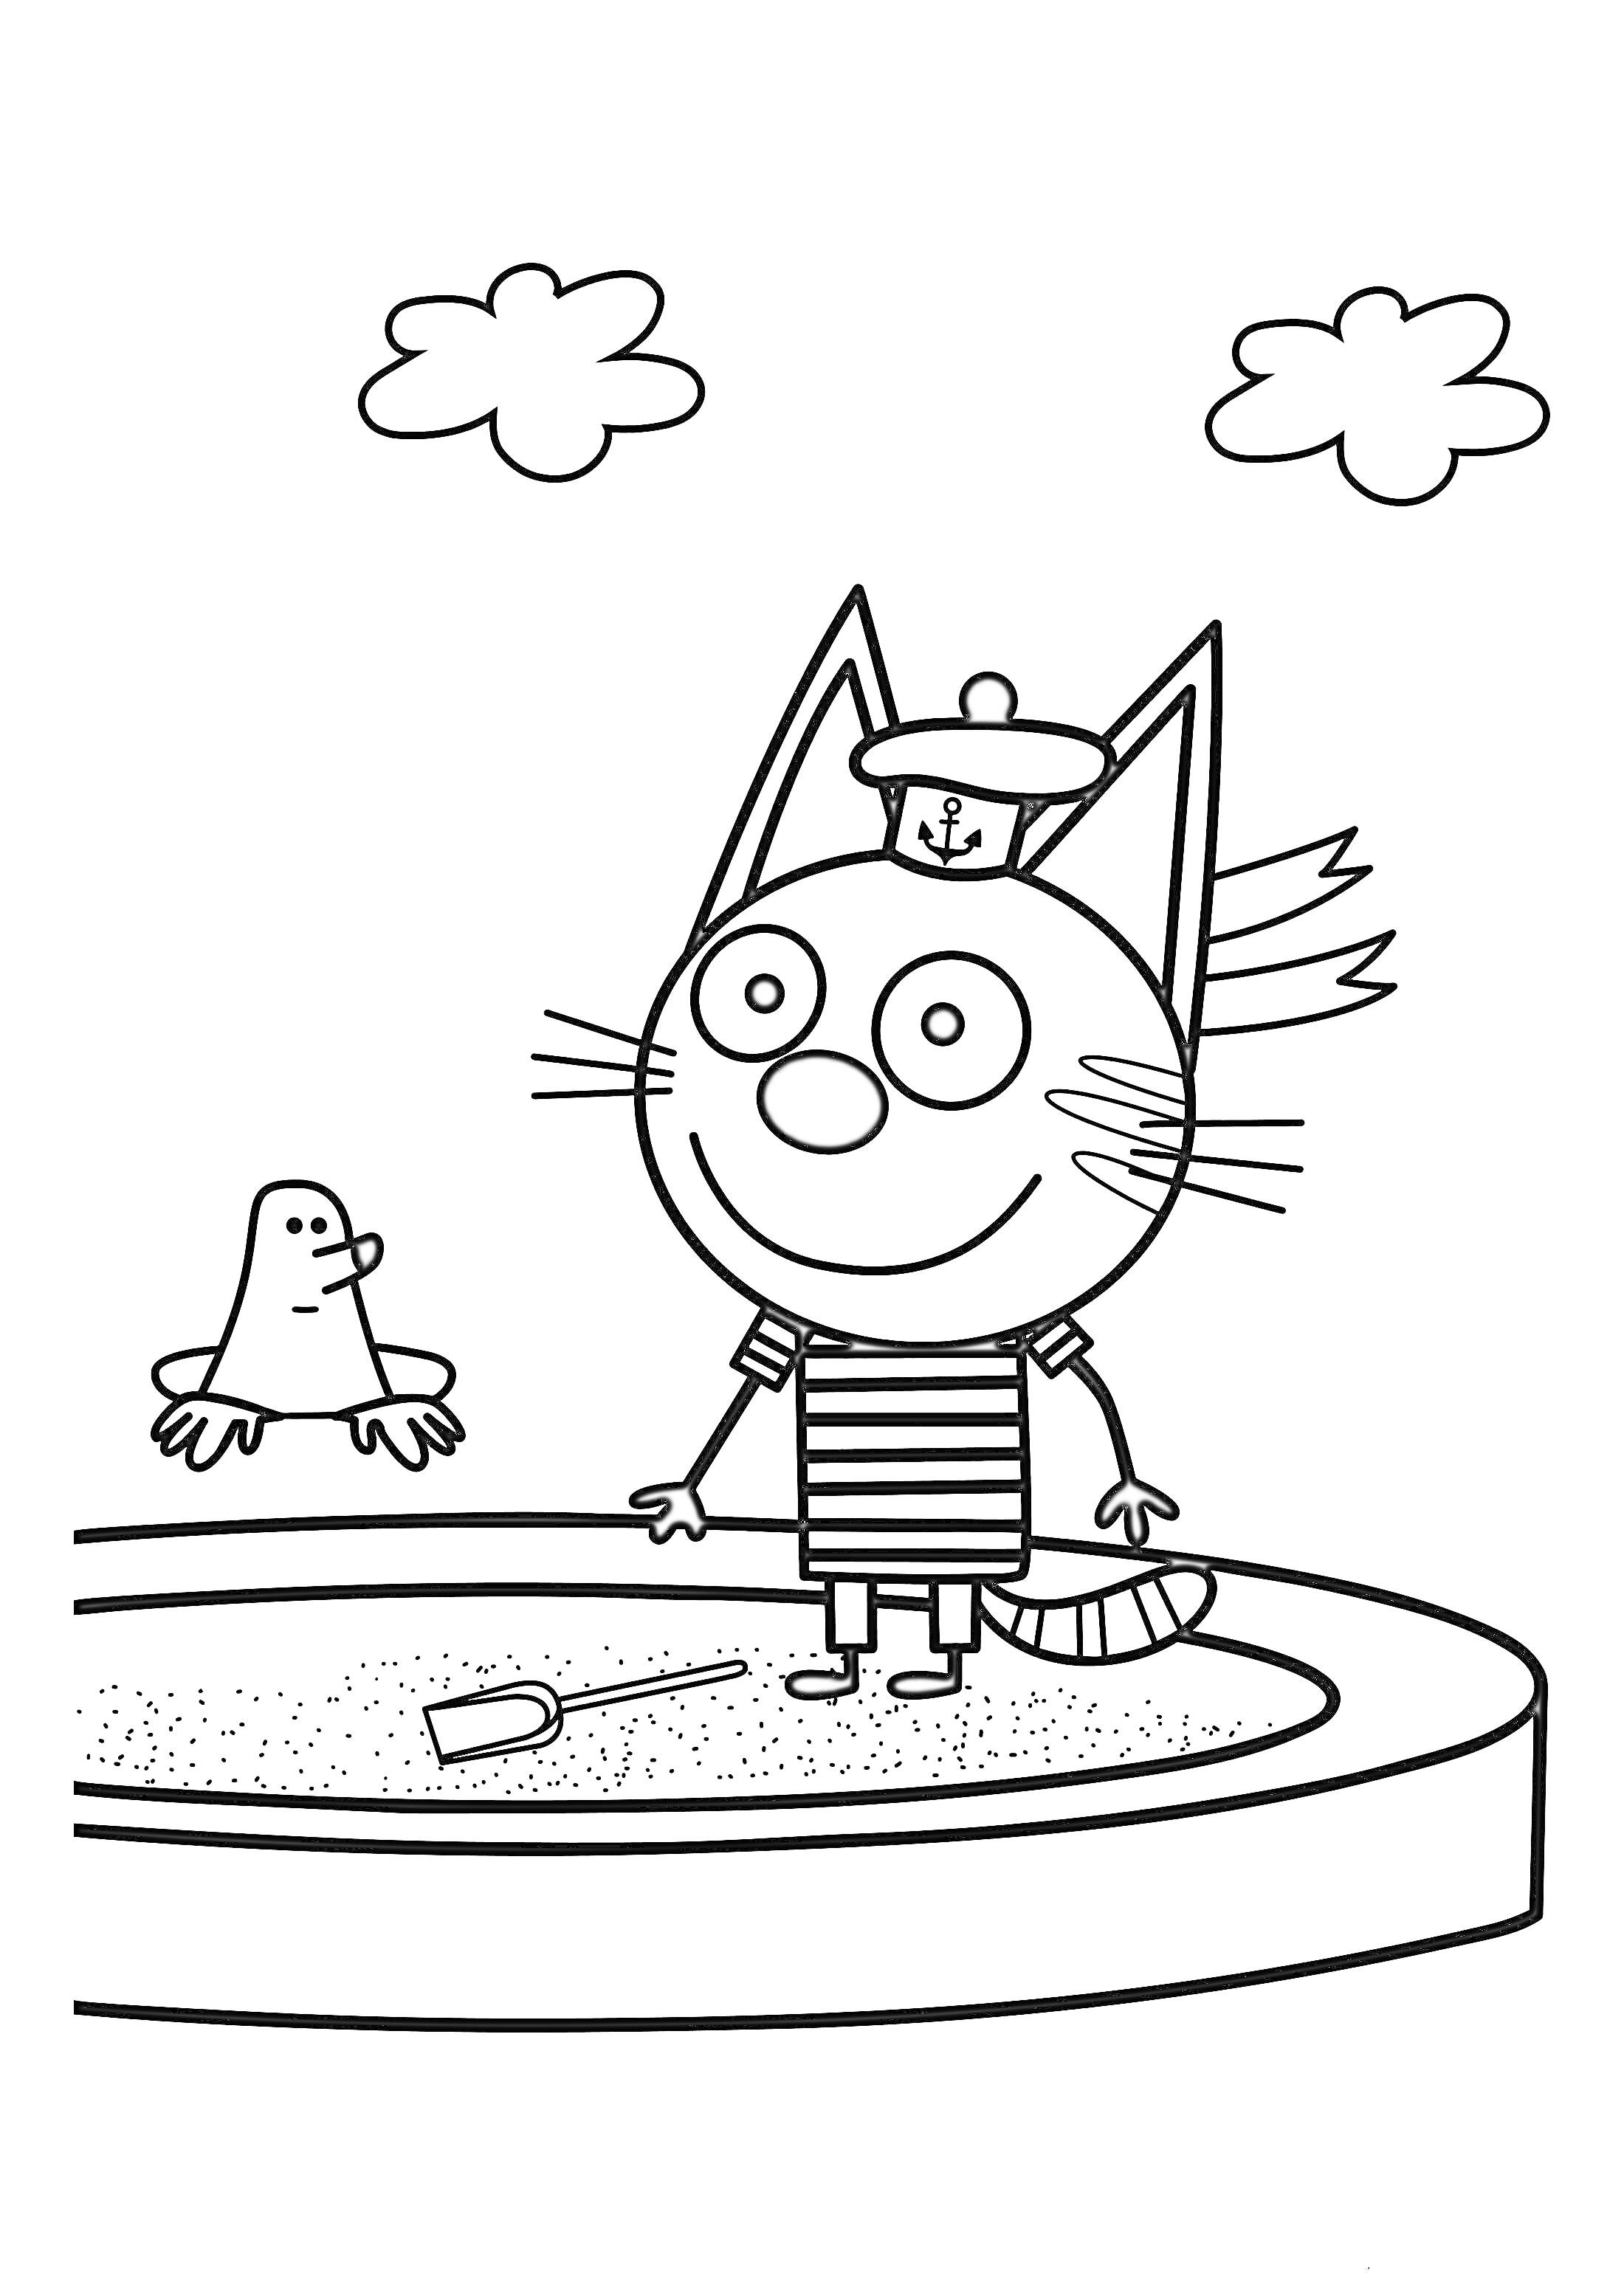 Котёнок в полосатой футболке с корабликом, играющий в песочнице рядом с птичкой и двумя облаками на заднем плане